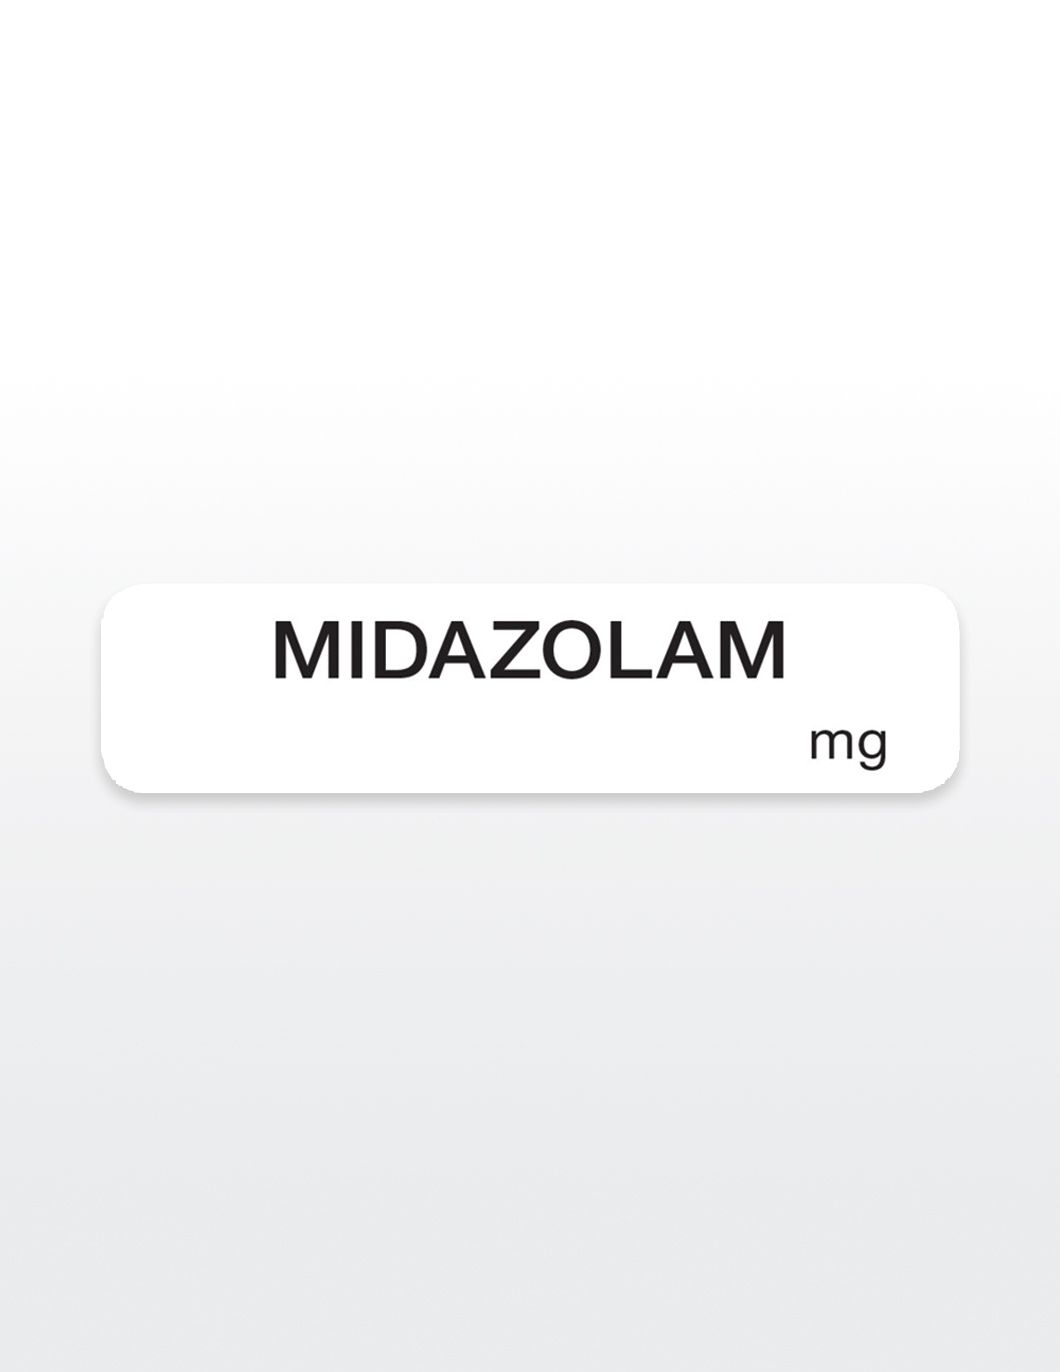 midazolam-drug-syringe-stickers